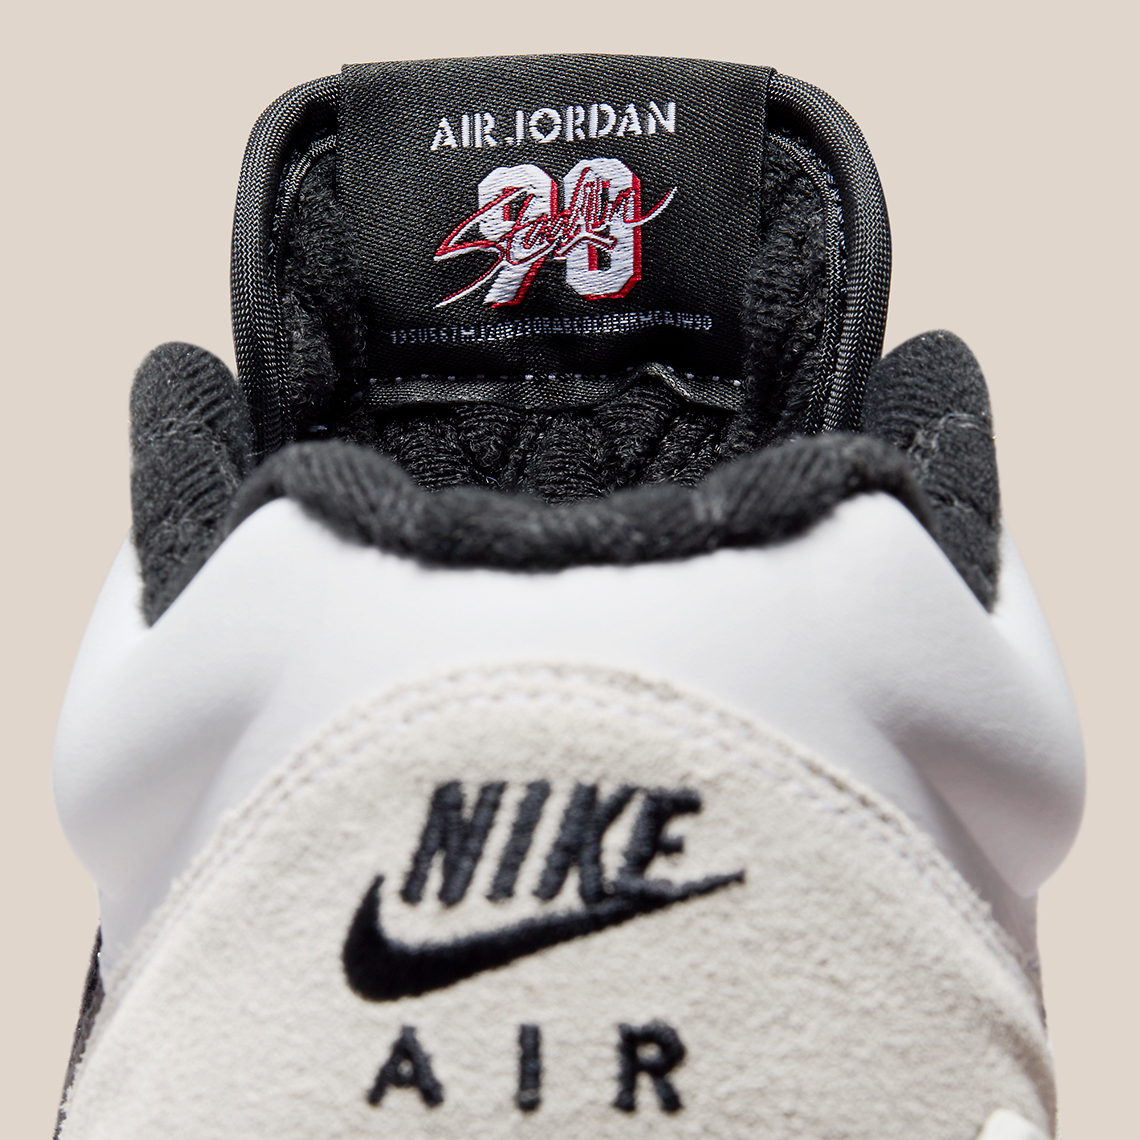 Nike Air Jordan 1 Low UNC White DK Powder Blue-Obsidian EUR 43 Fd6424 100 7